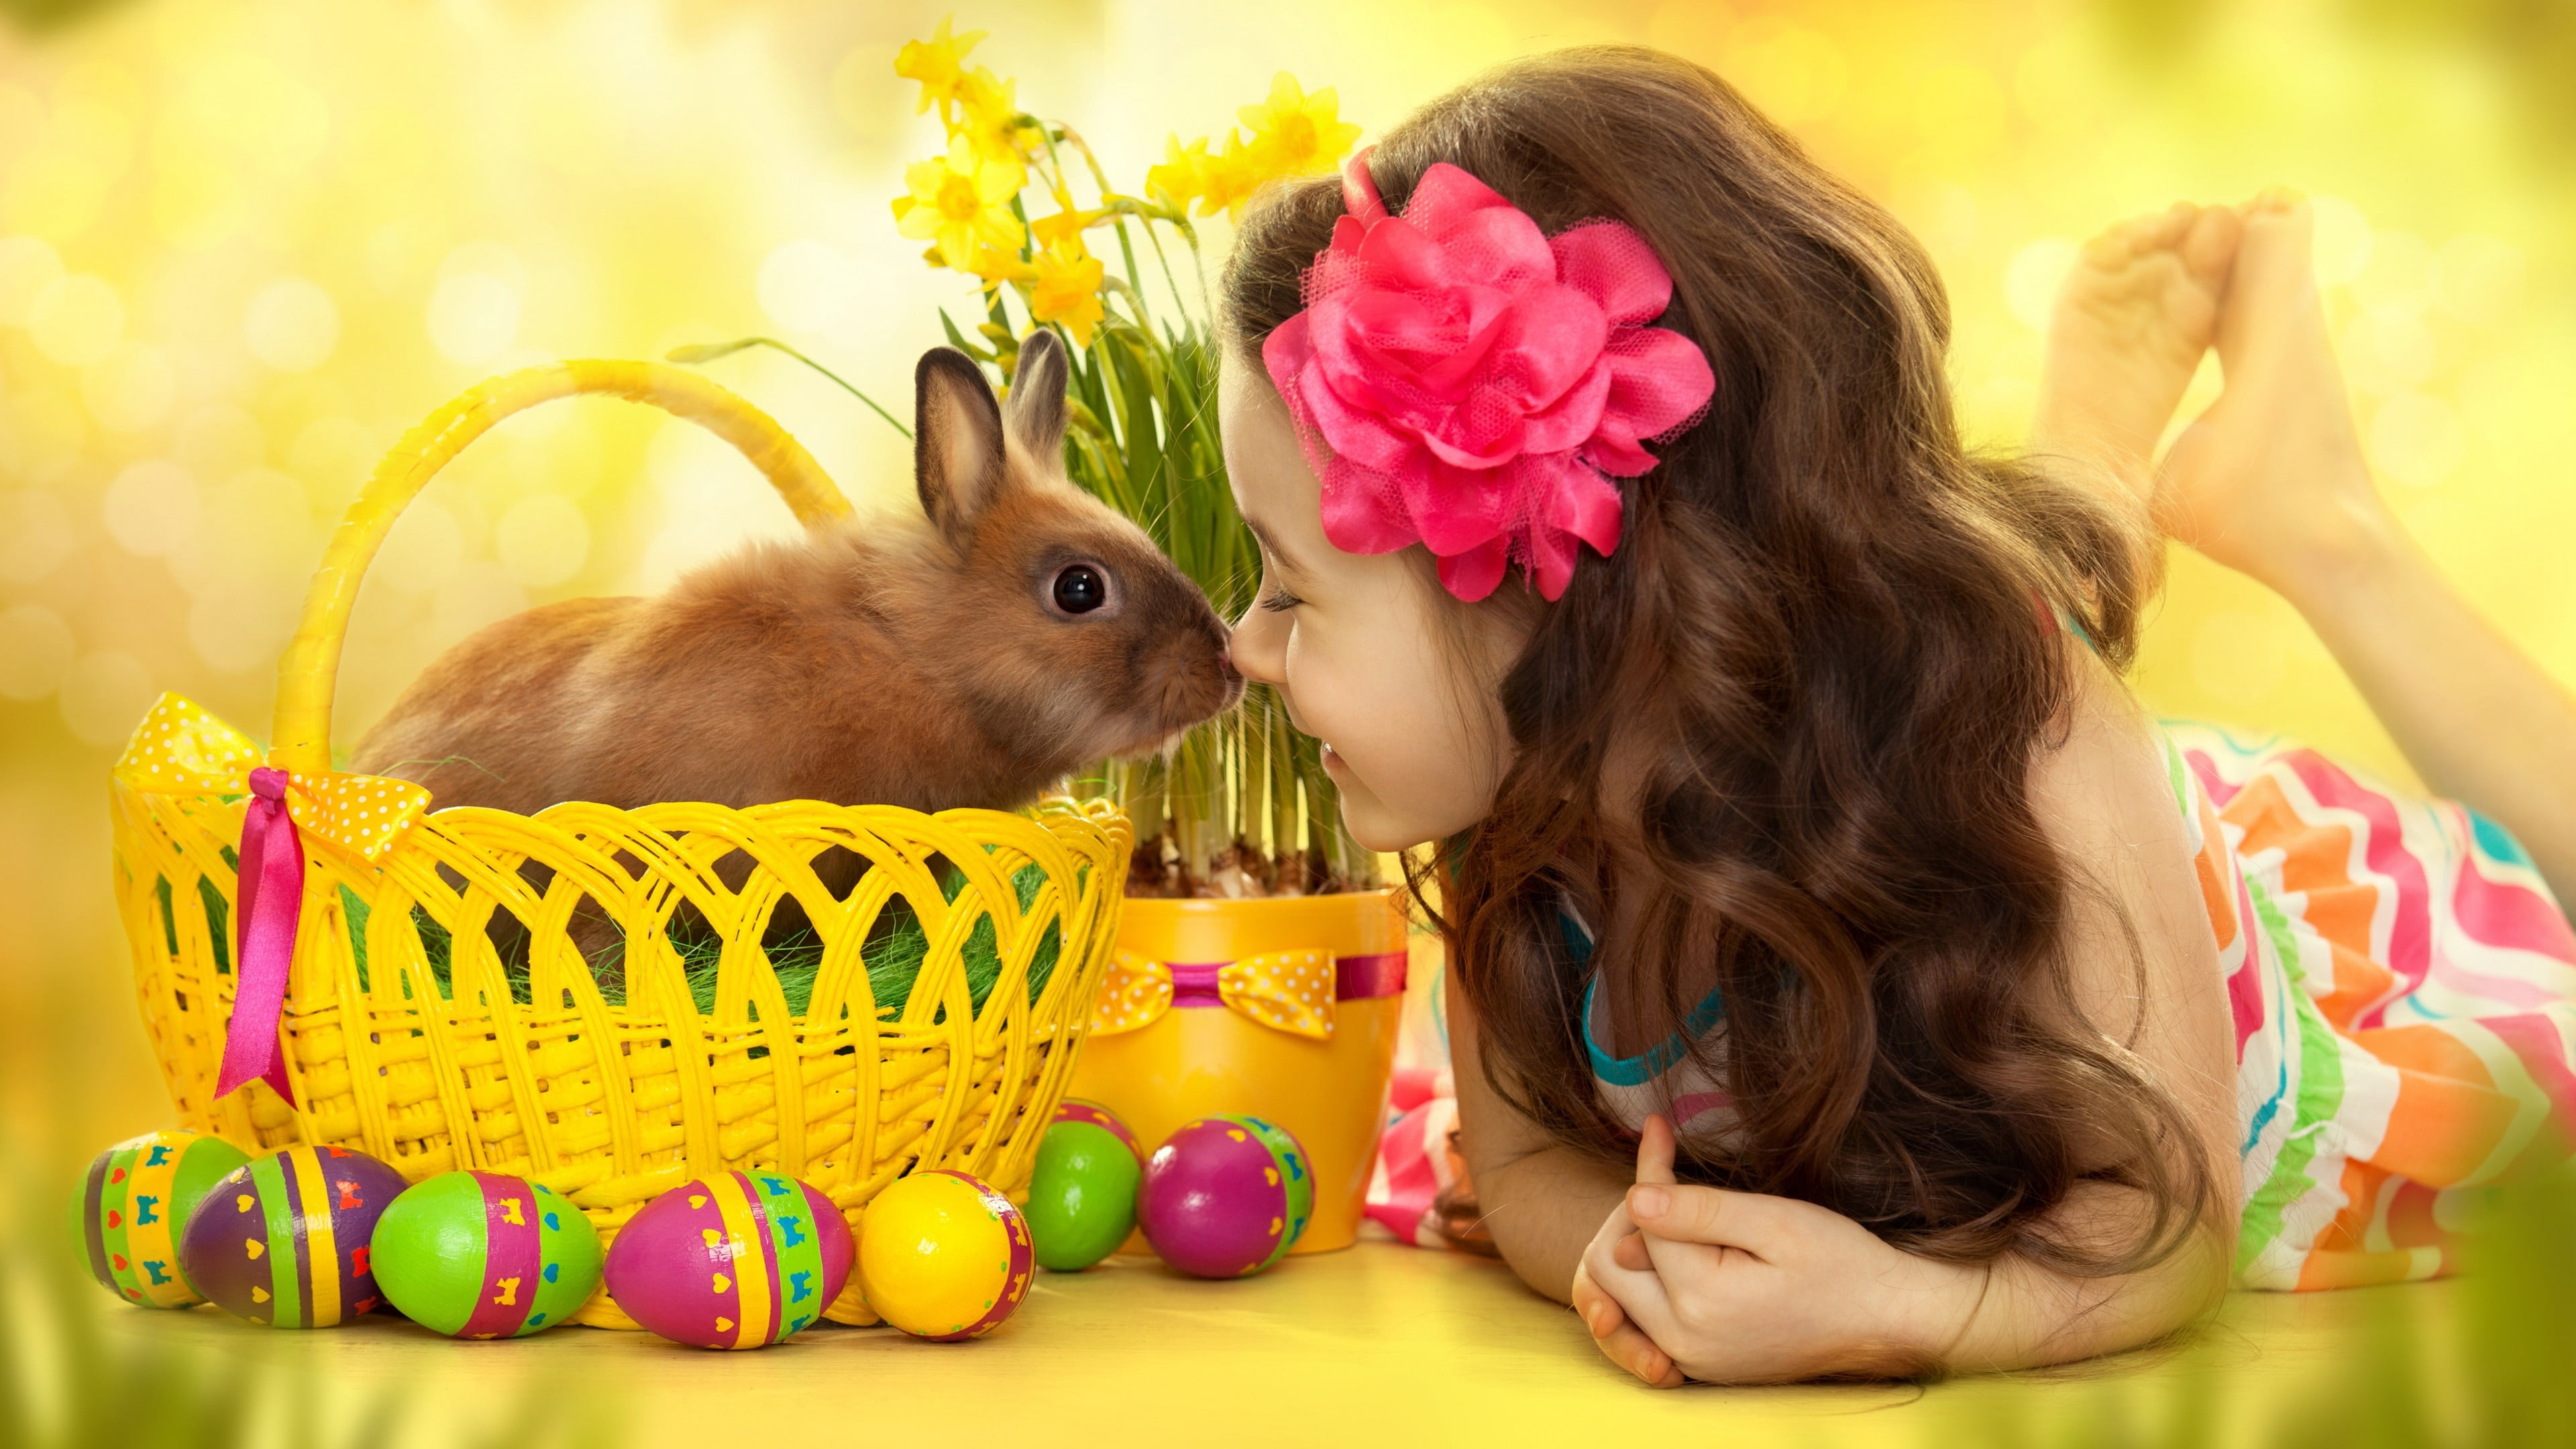 brown rabbit, children, baskets, eggs, flower in hair, barefoot